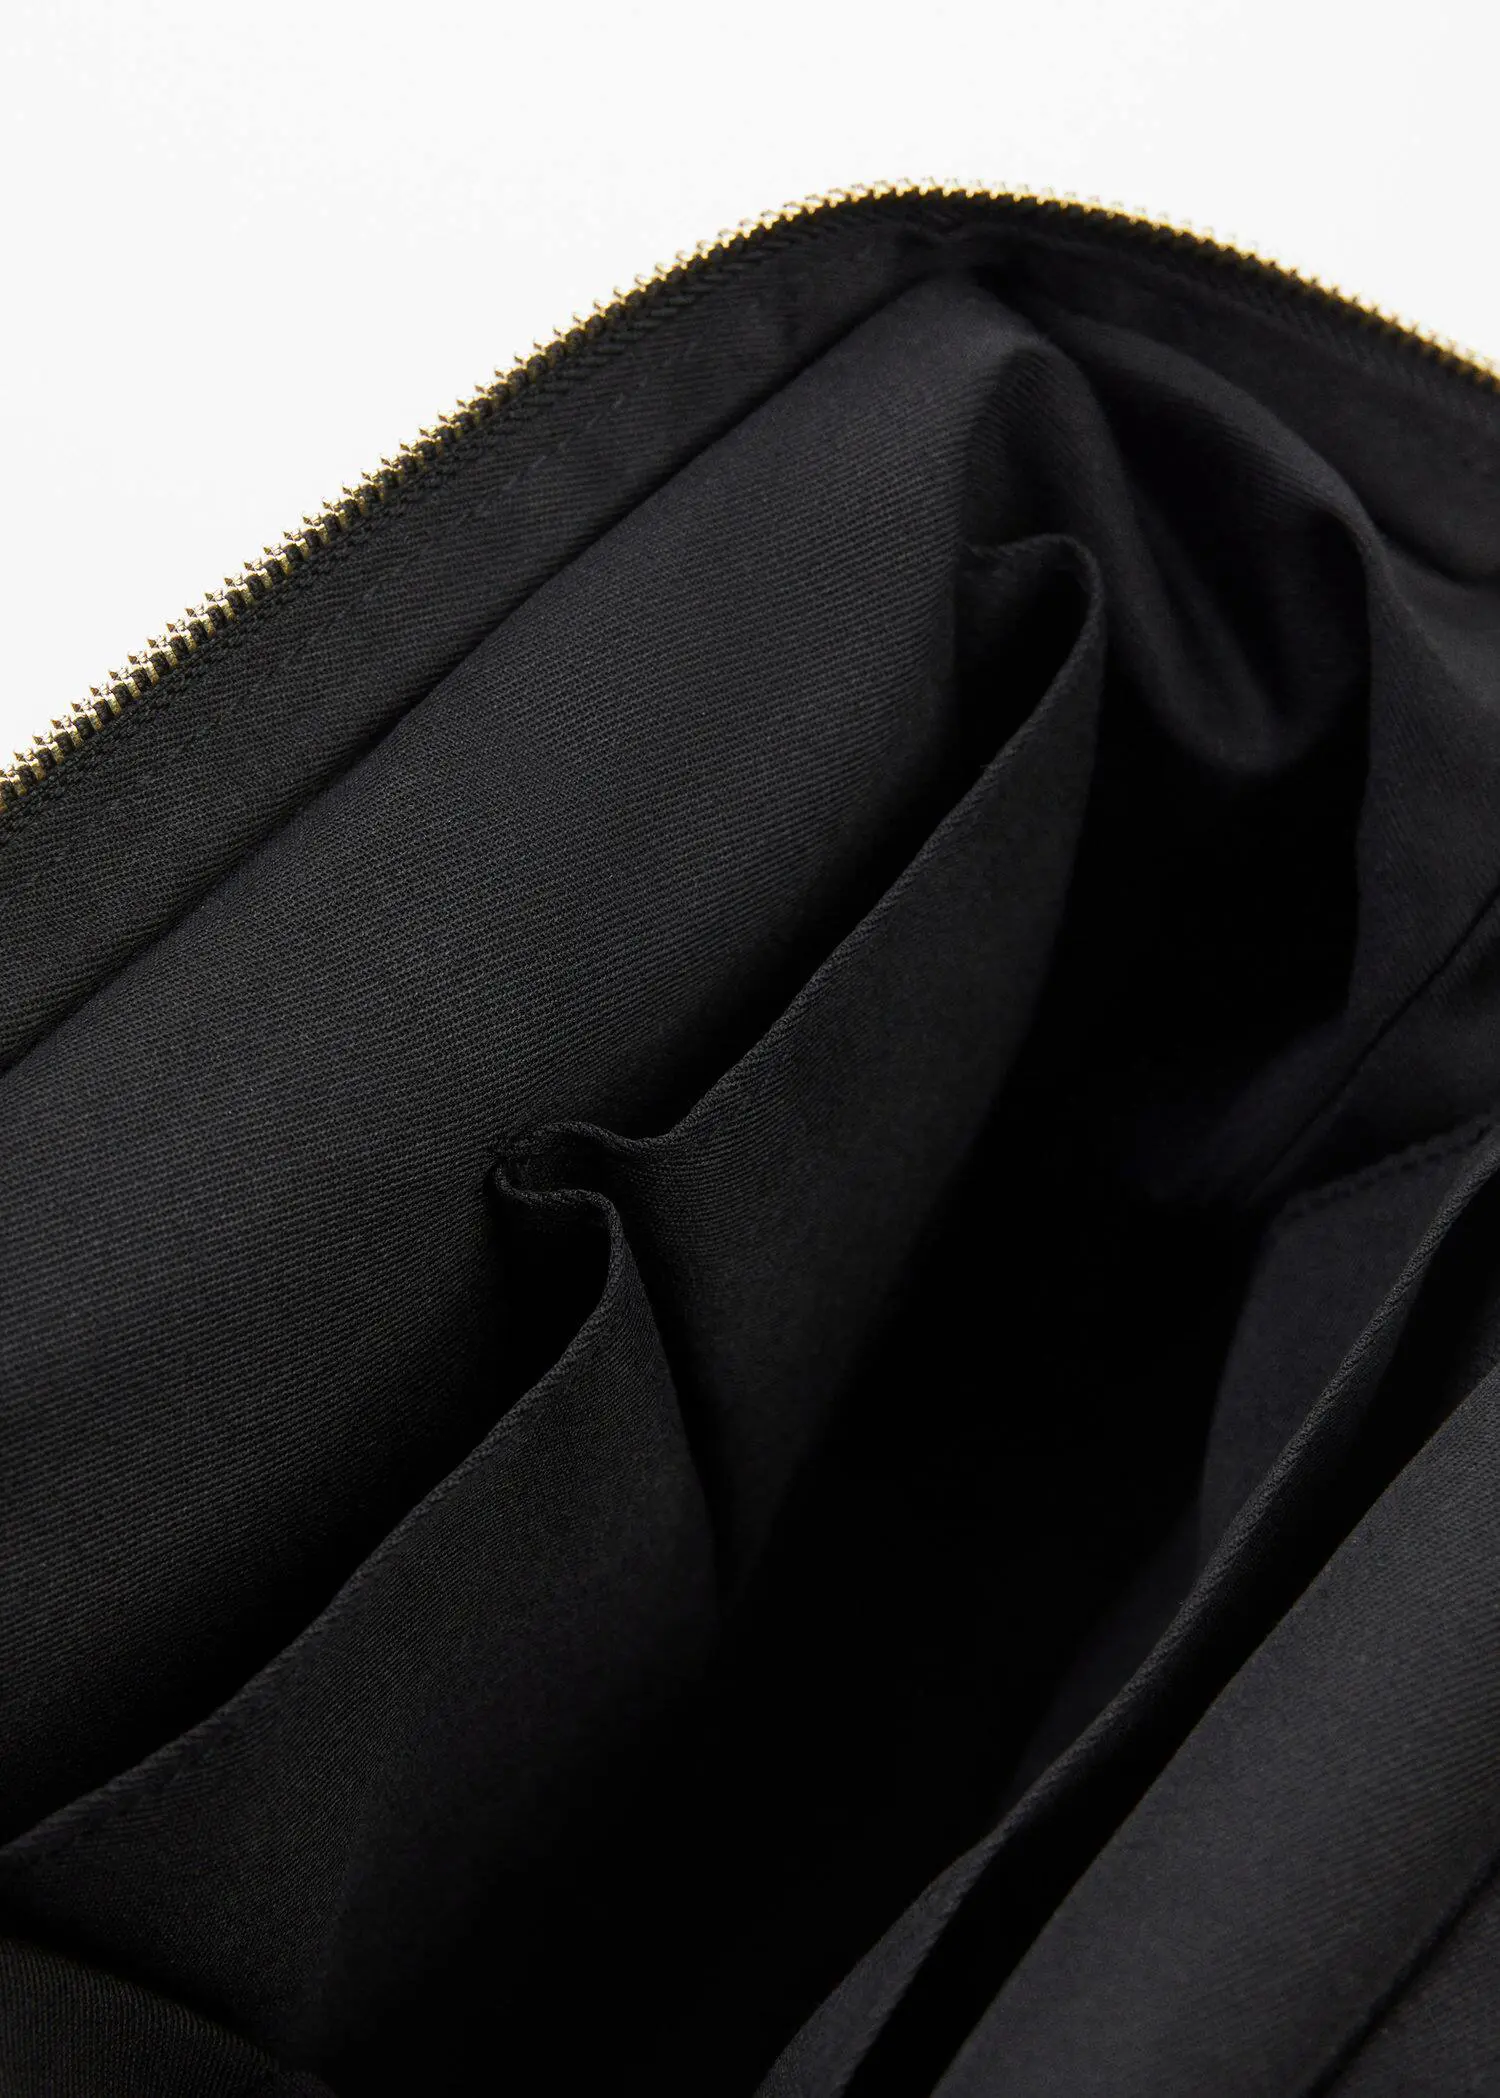 Mango Zipped nylon cosmetics bag. a close-up view of the inside of a black bag. 